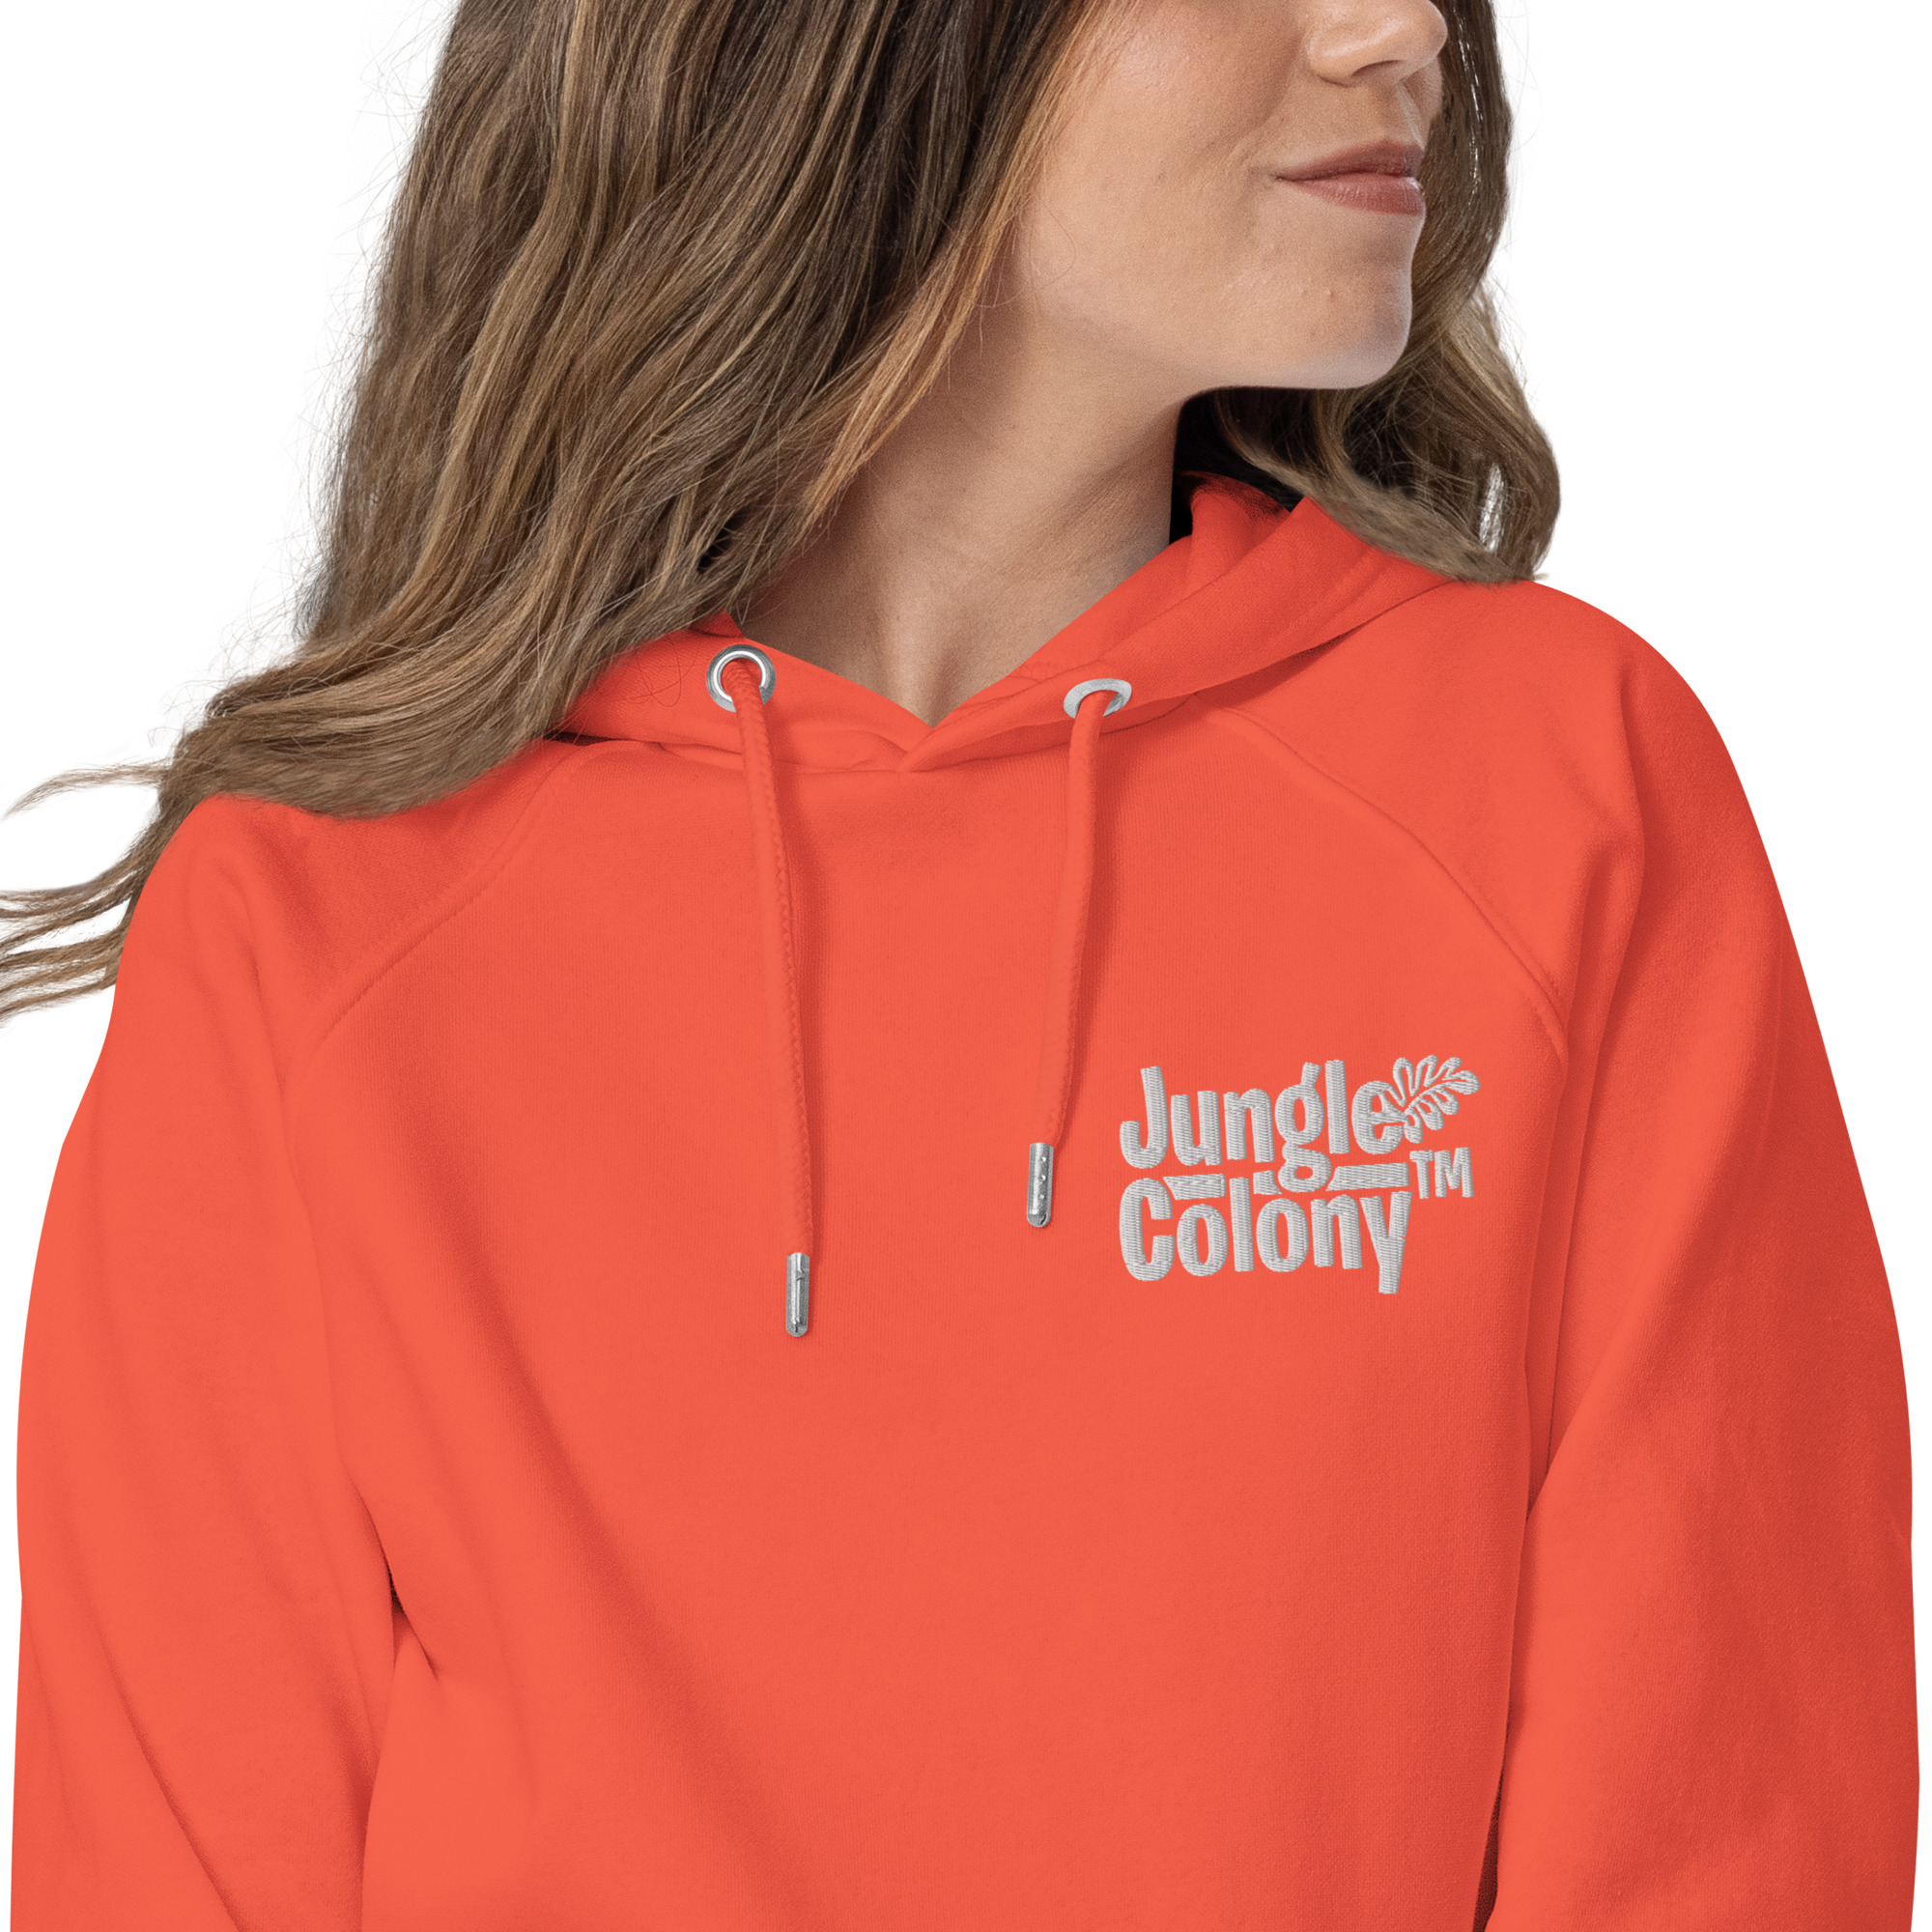 unisex-eco-raglan-hoodie-burnt-orange-zoomed-in-6420086c85e4b.jpg